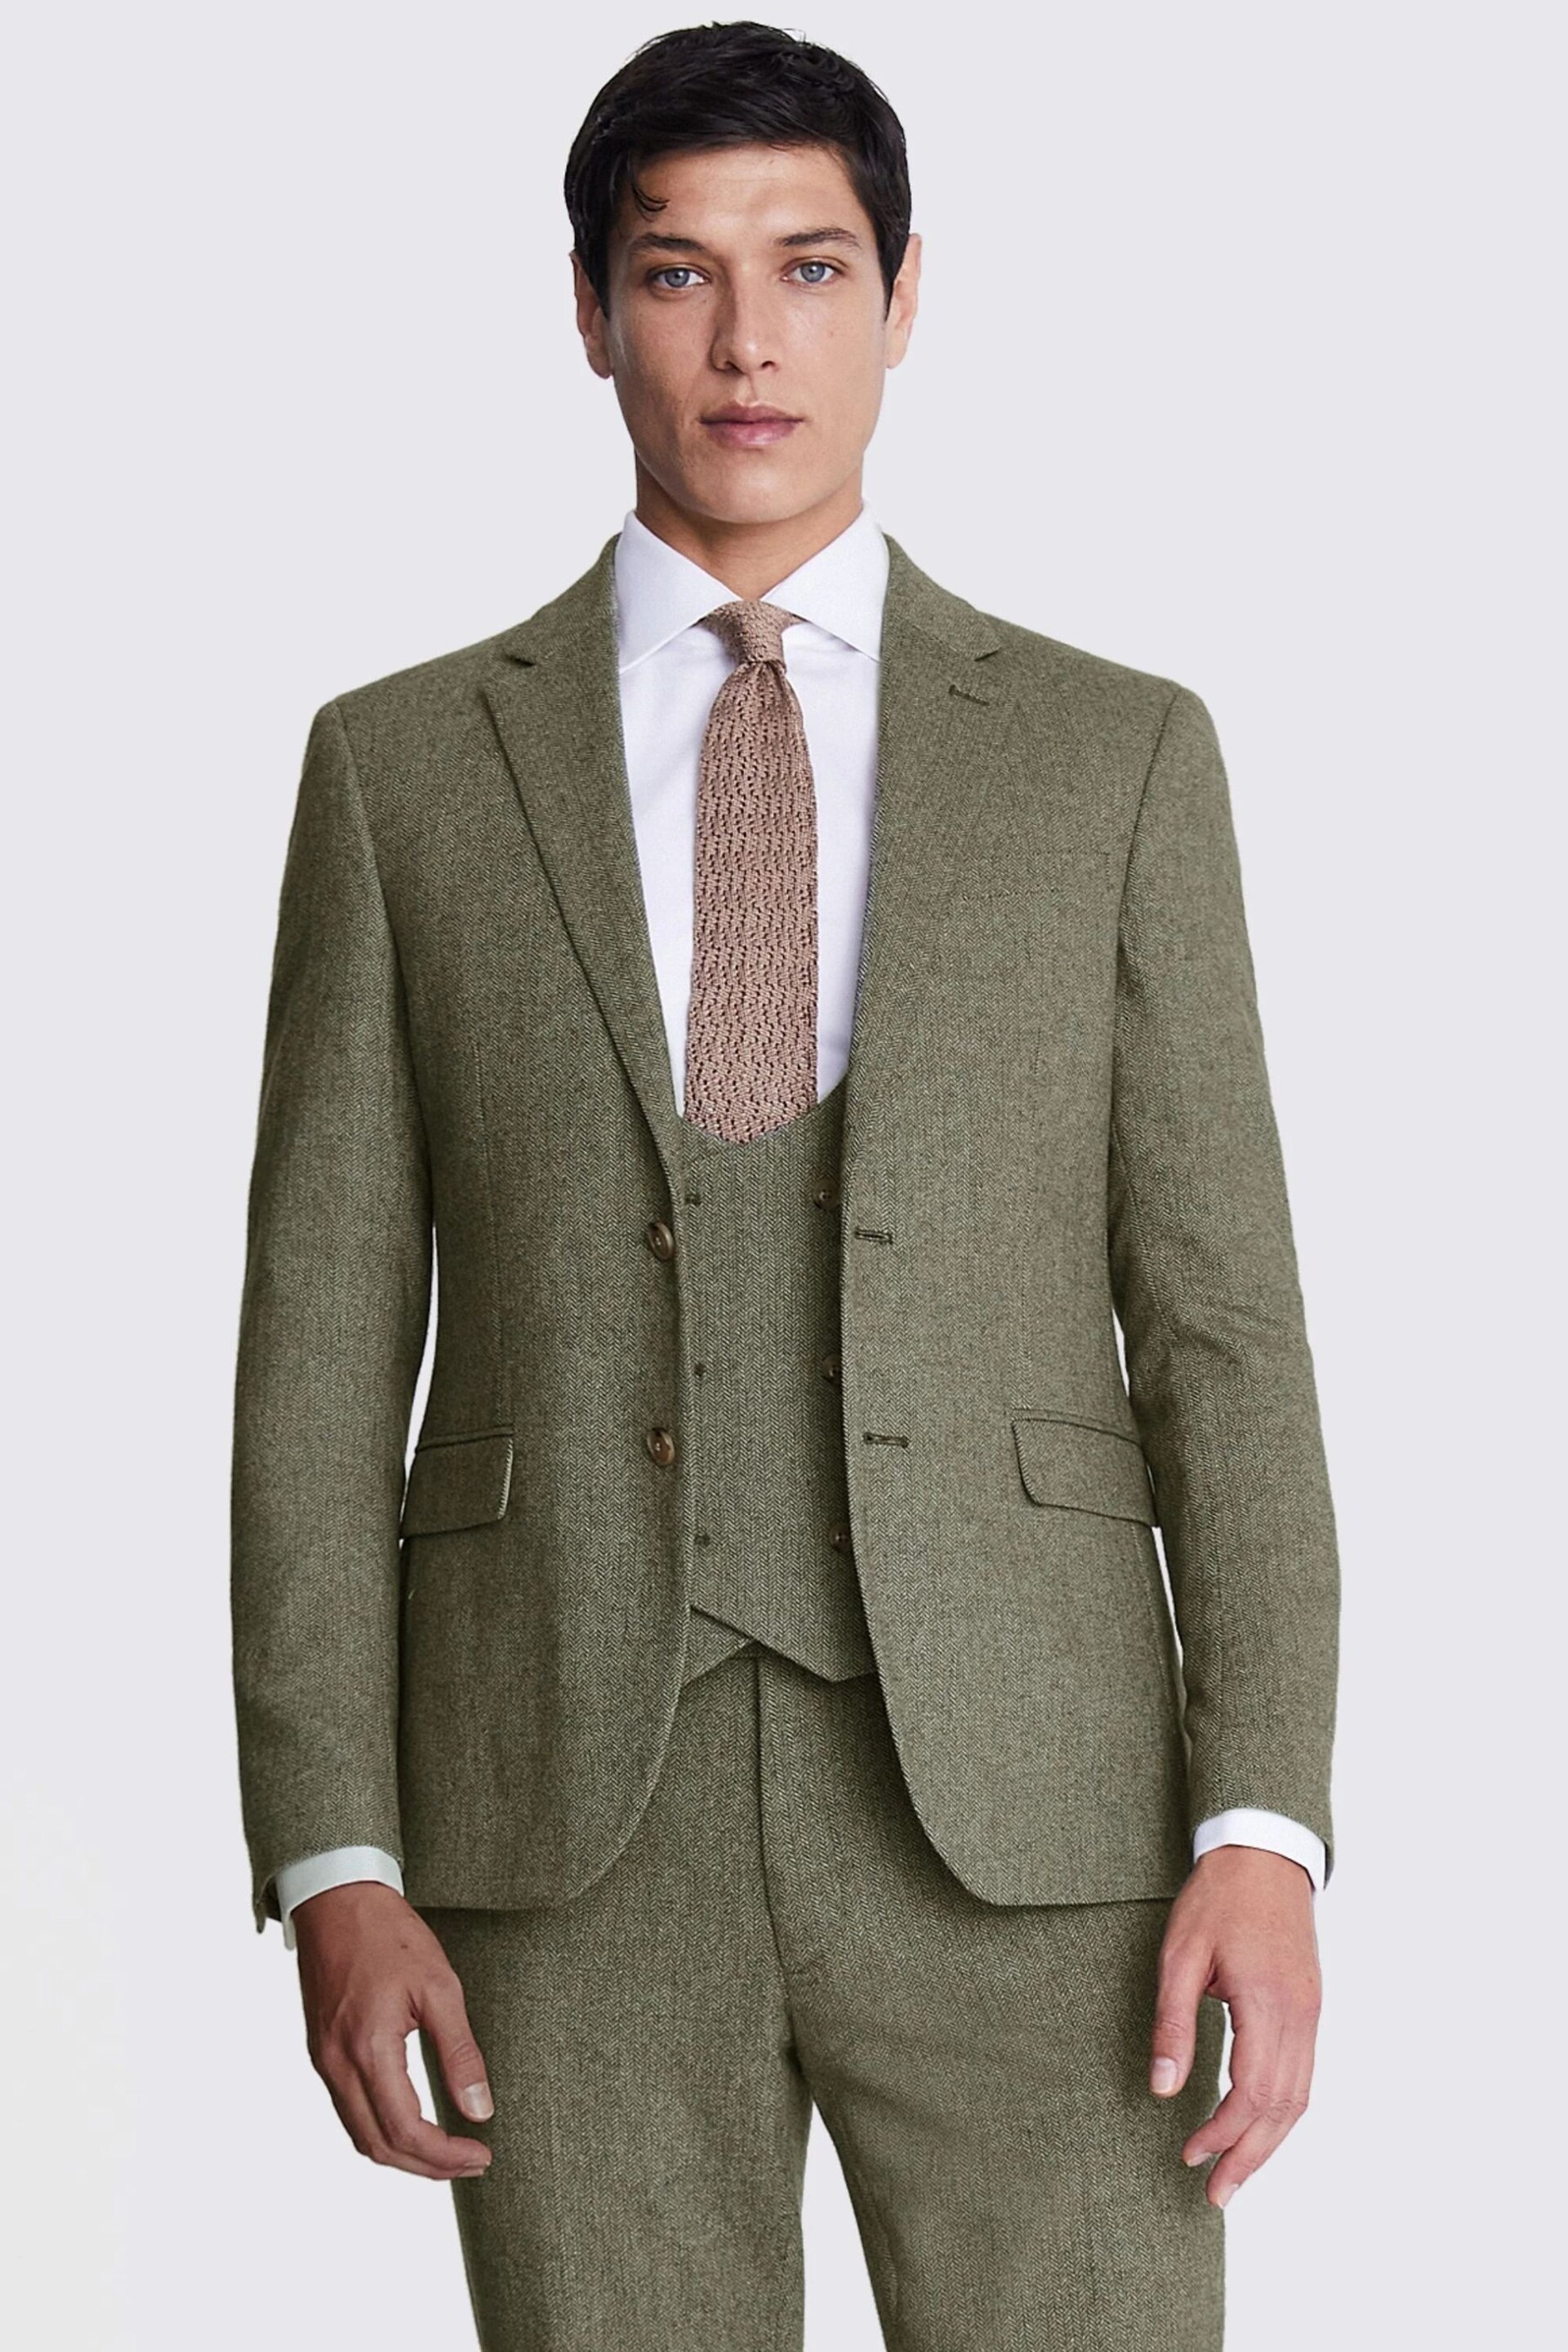 MOSS Slim Fit Green Sage Herringbone Tweed Jacket - Image 1 of 7